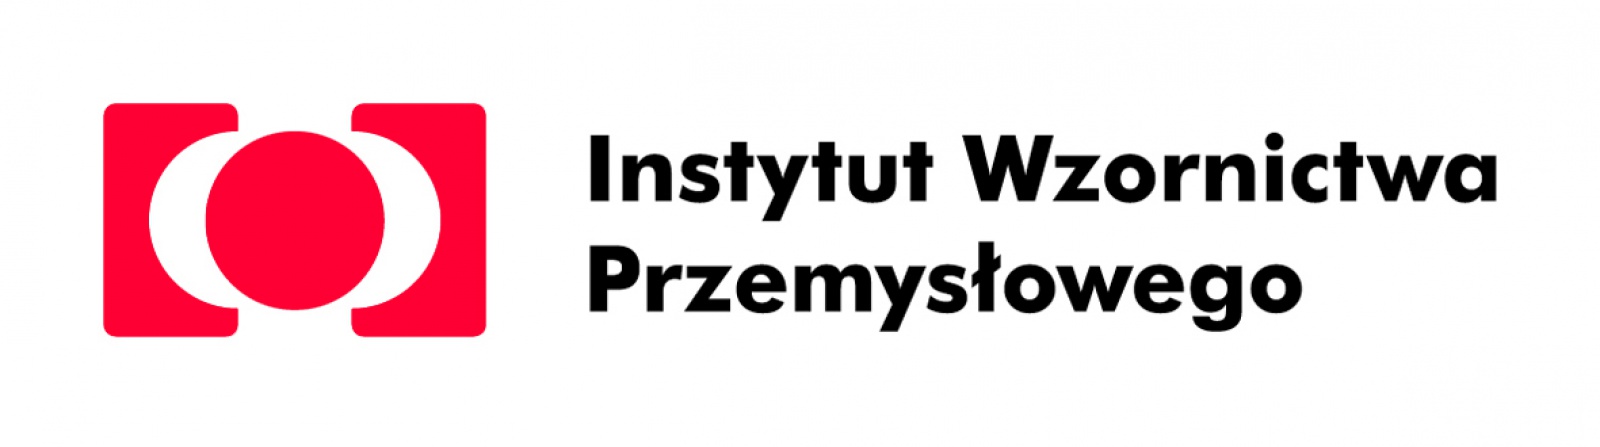 INSTYTUT WZORNICTWA PRZEMYSŁOWEGO Sp. z o.o.